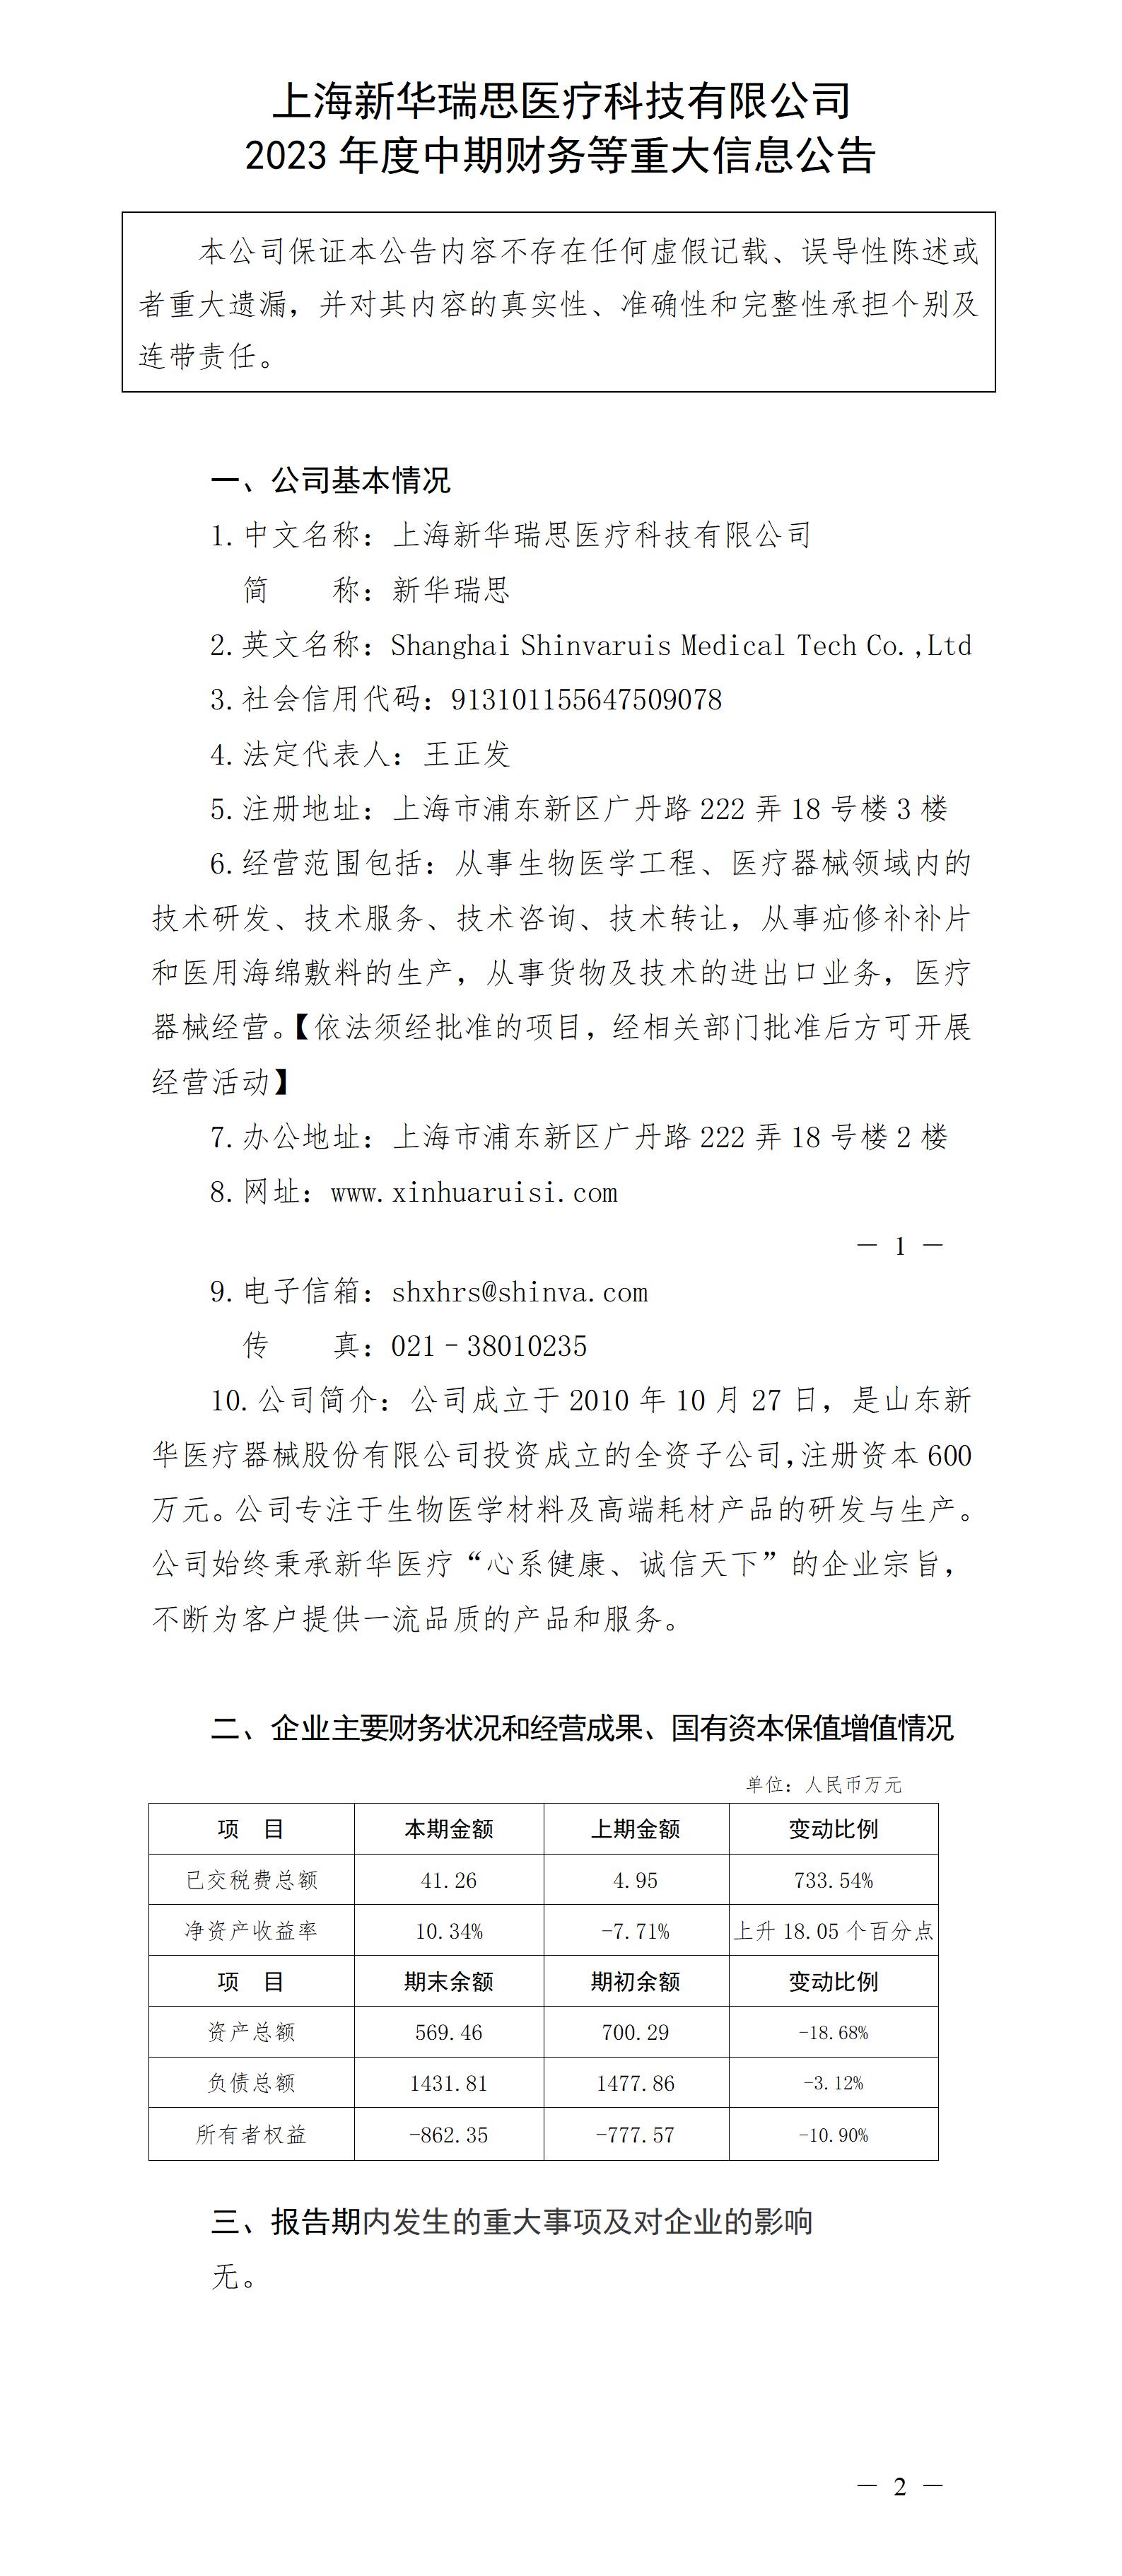 上海新華瑞思醫療科技有限公司2023年度中期財務等重大信息公告_01.jpg